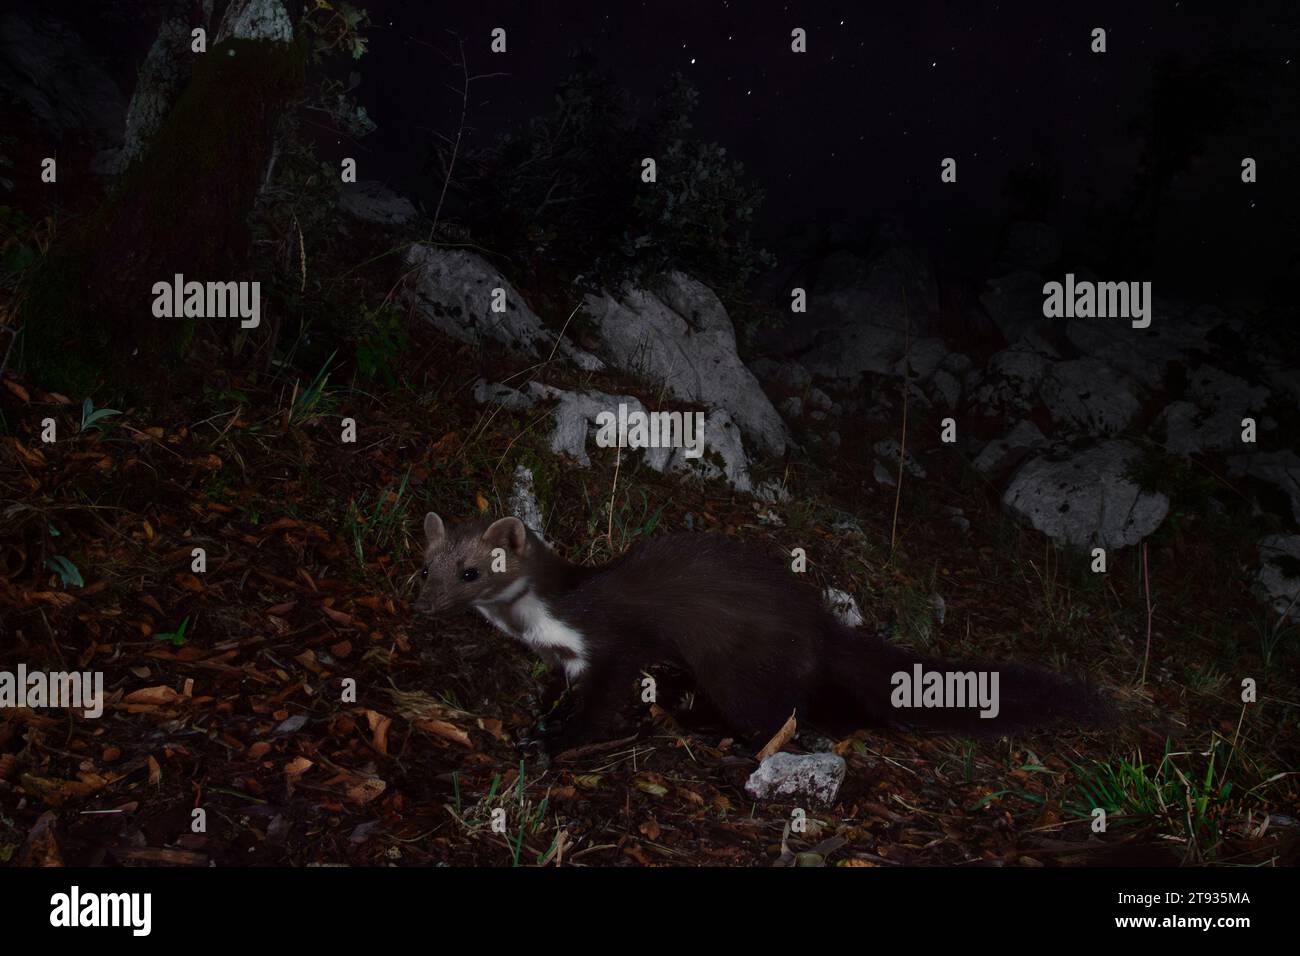 Marten de hêtre (Martes foina), vue latérale d'un adulte debout sur le sol la nuit, Campanie, Italie Banque D'Images